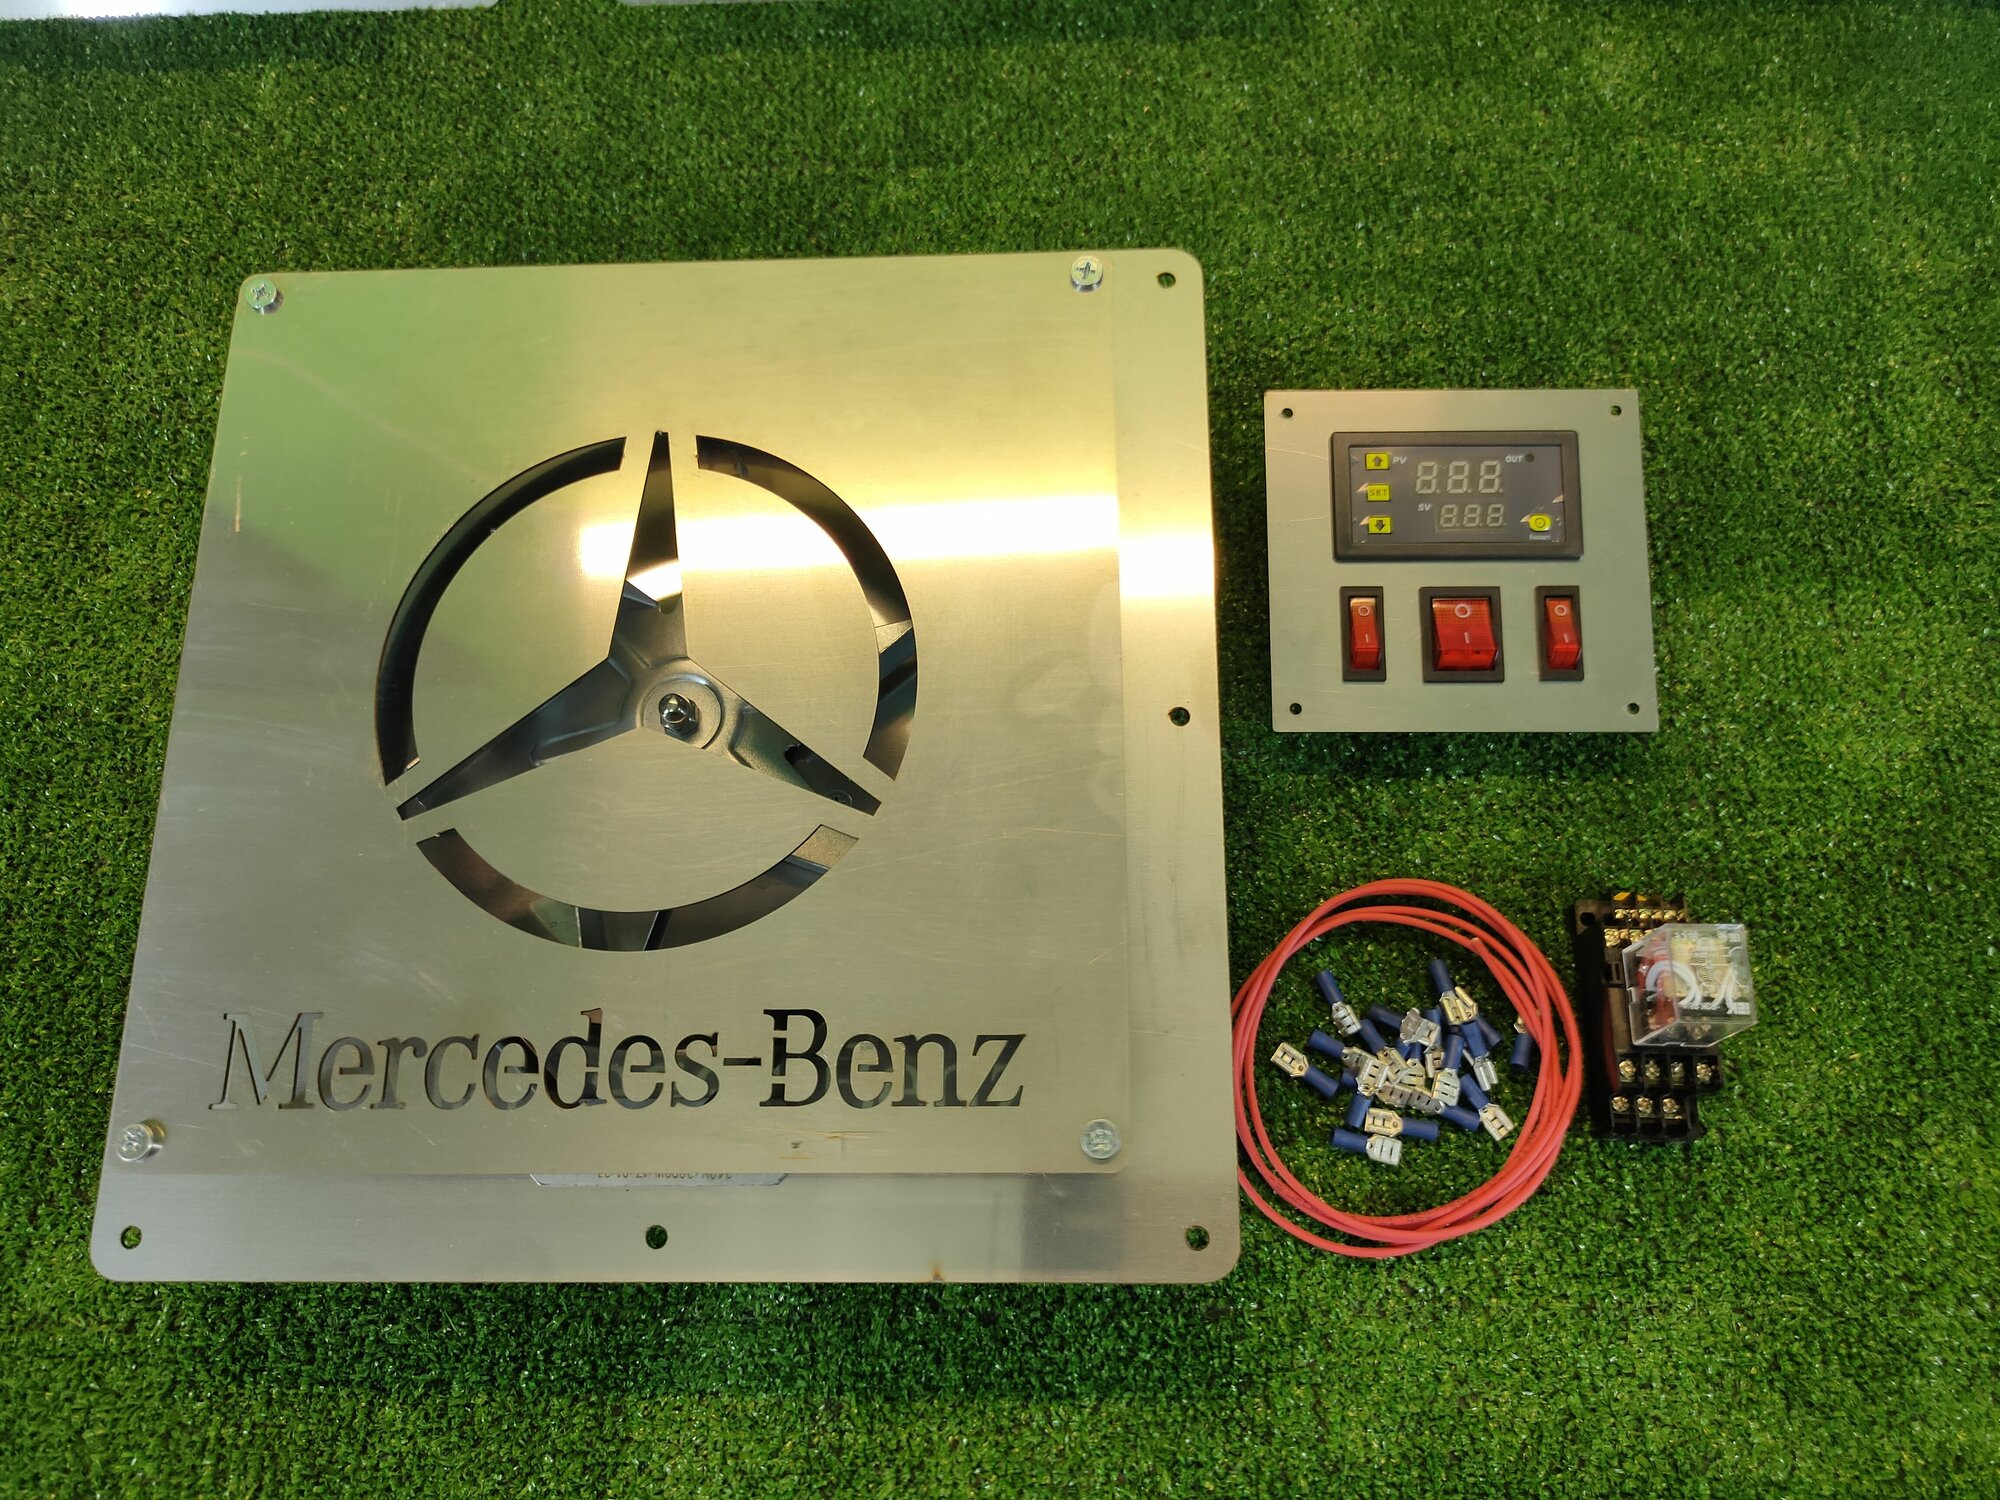 Конвекция для коптильни Mercedes ТЭН 2кВт+панель управления+реле 3кВт